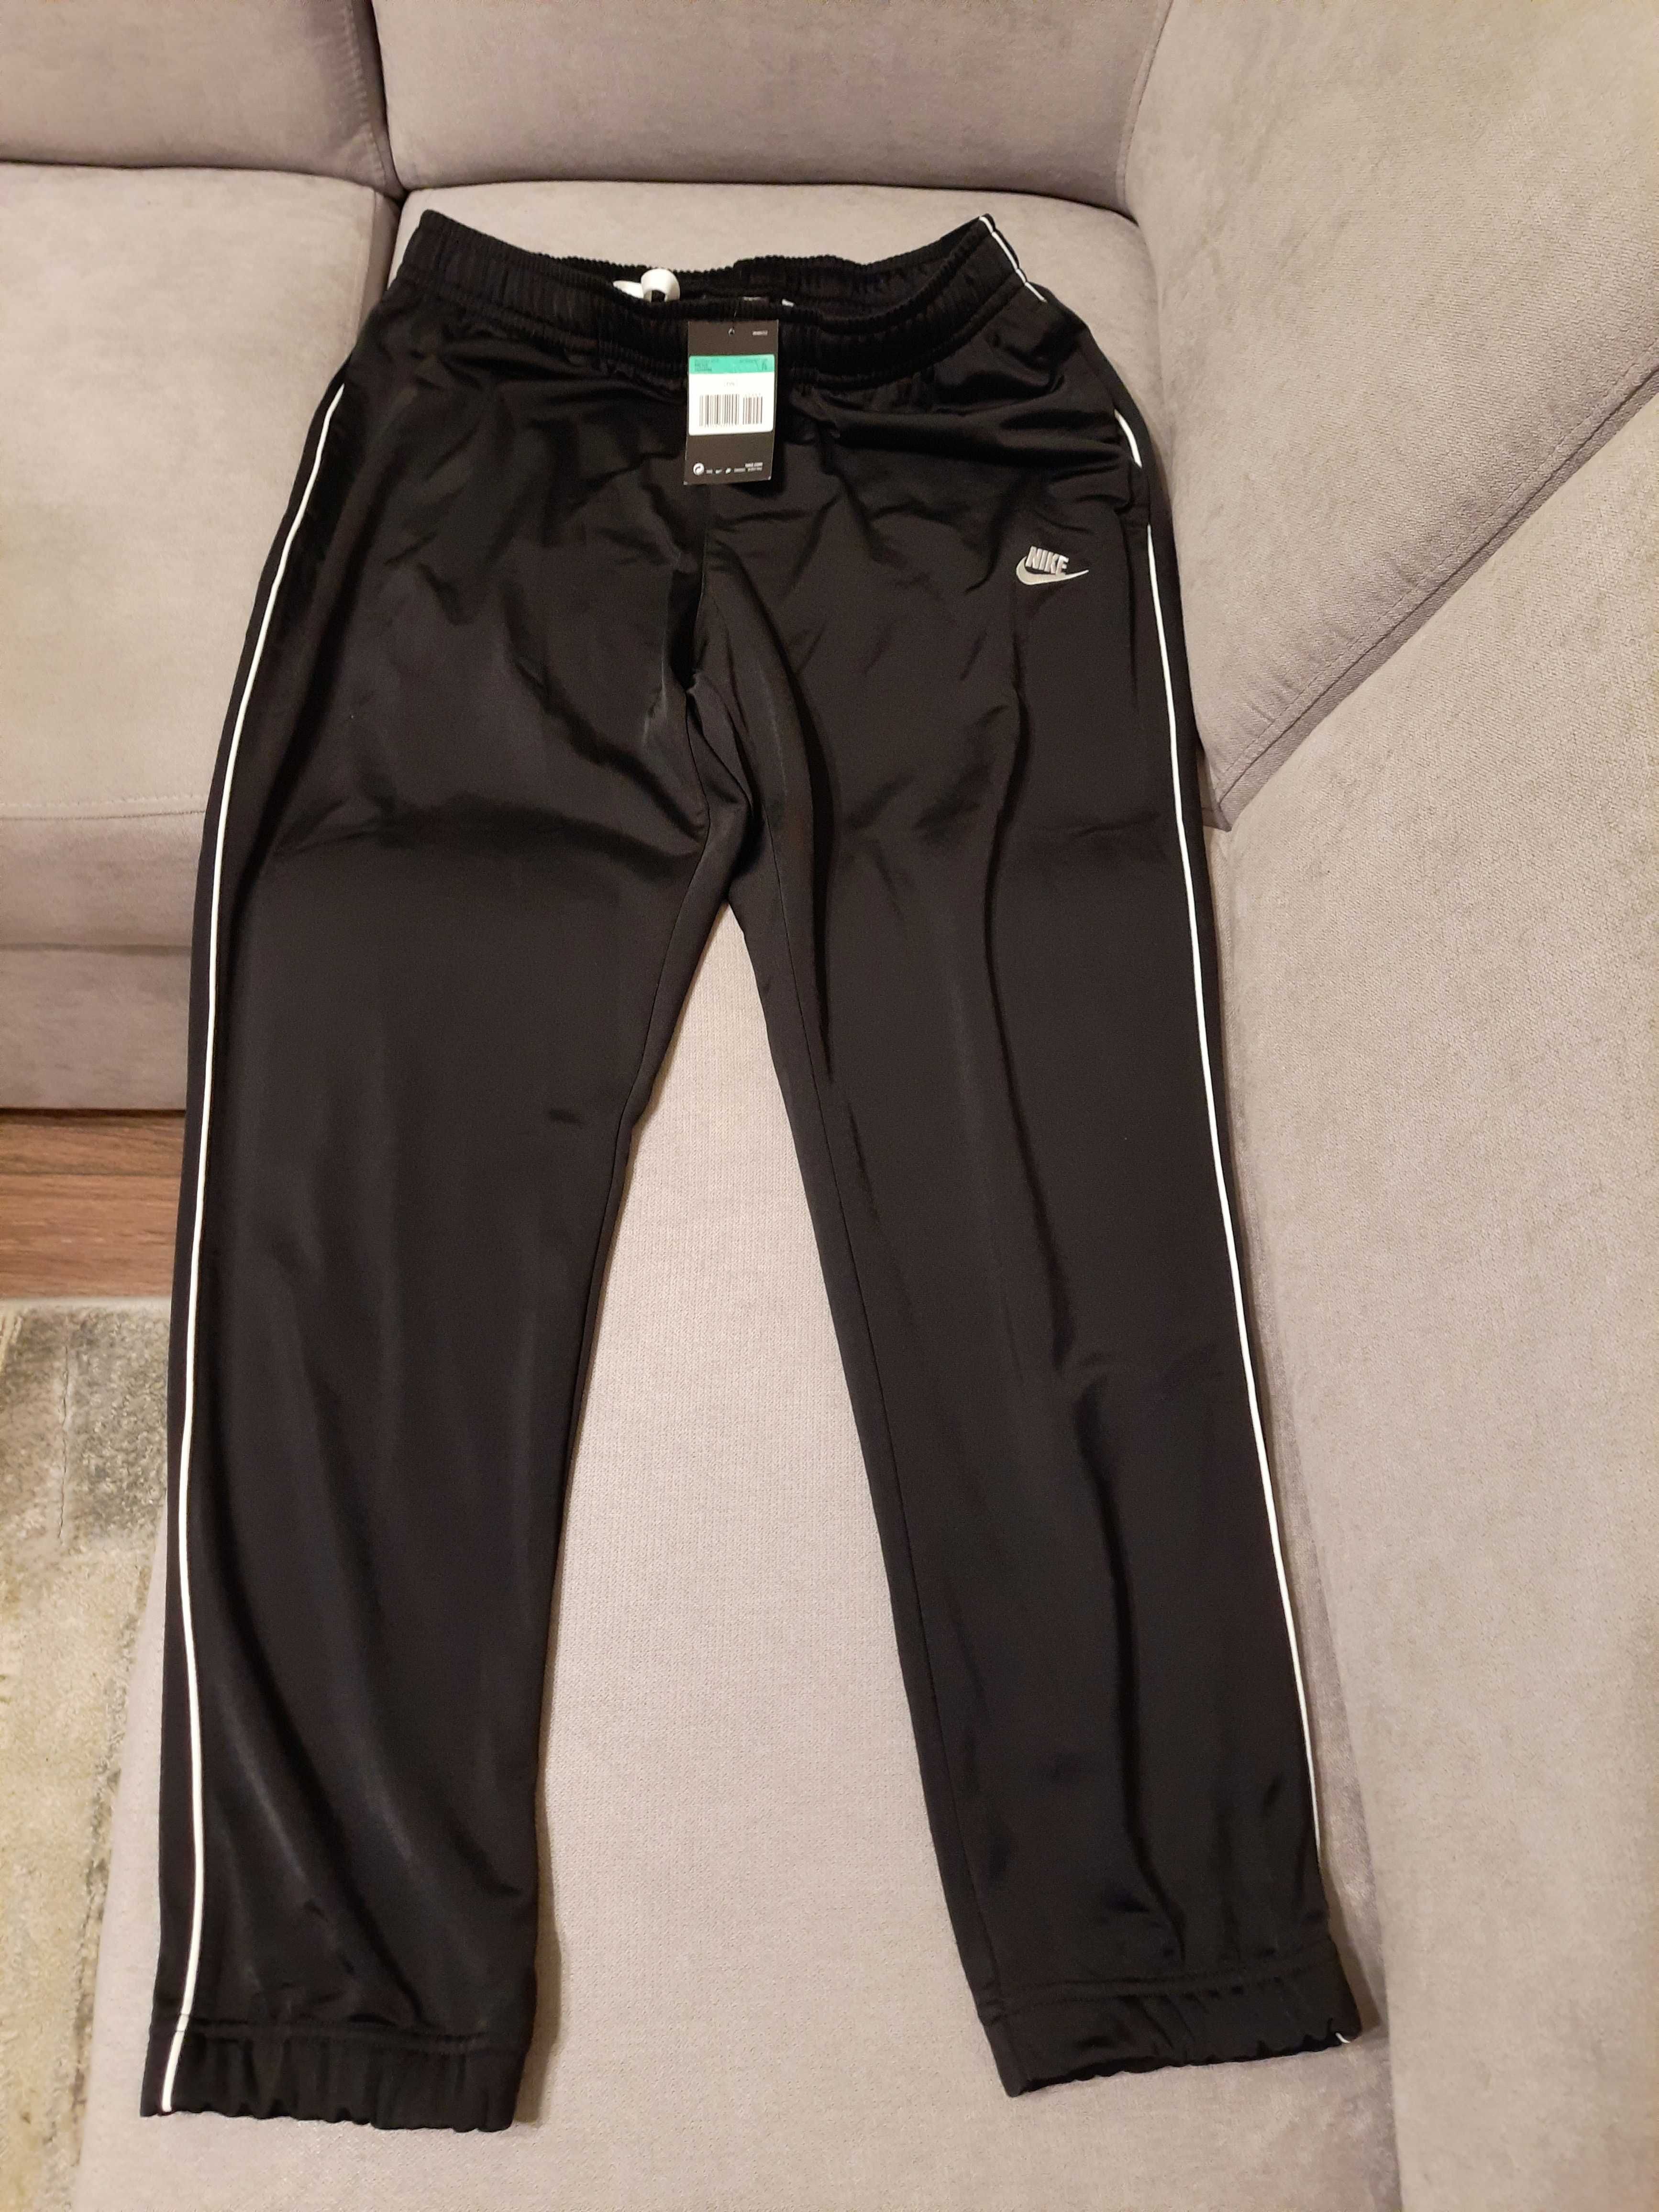 Spodnie dresowe NIKE Czarne NOWE rozmiar XL